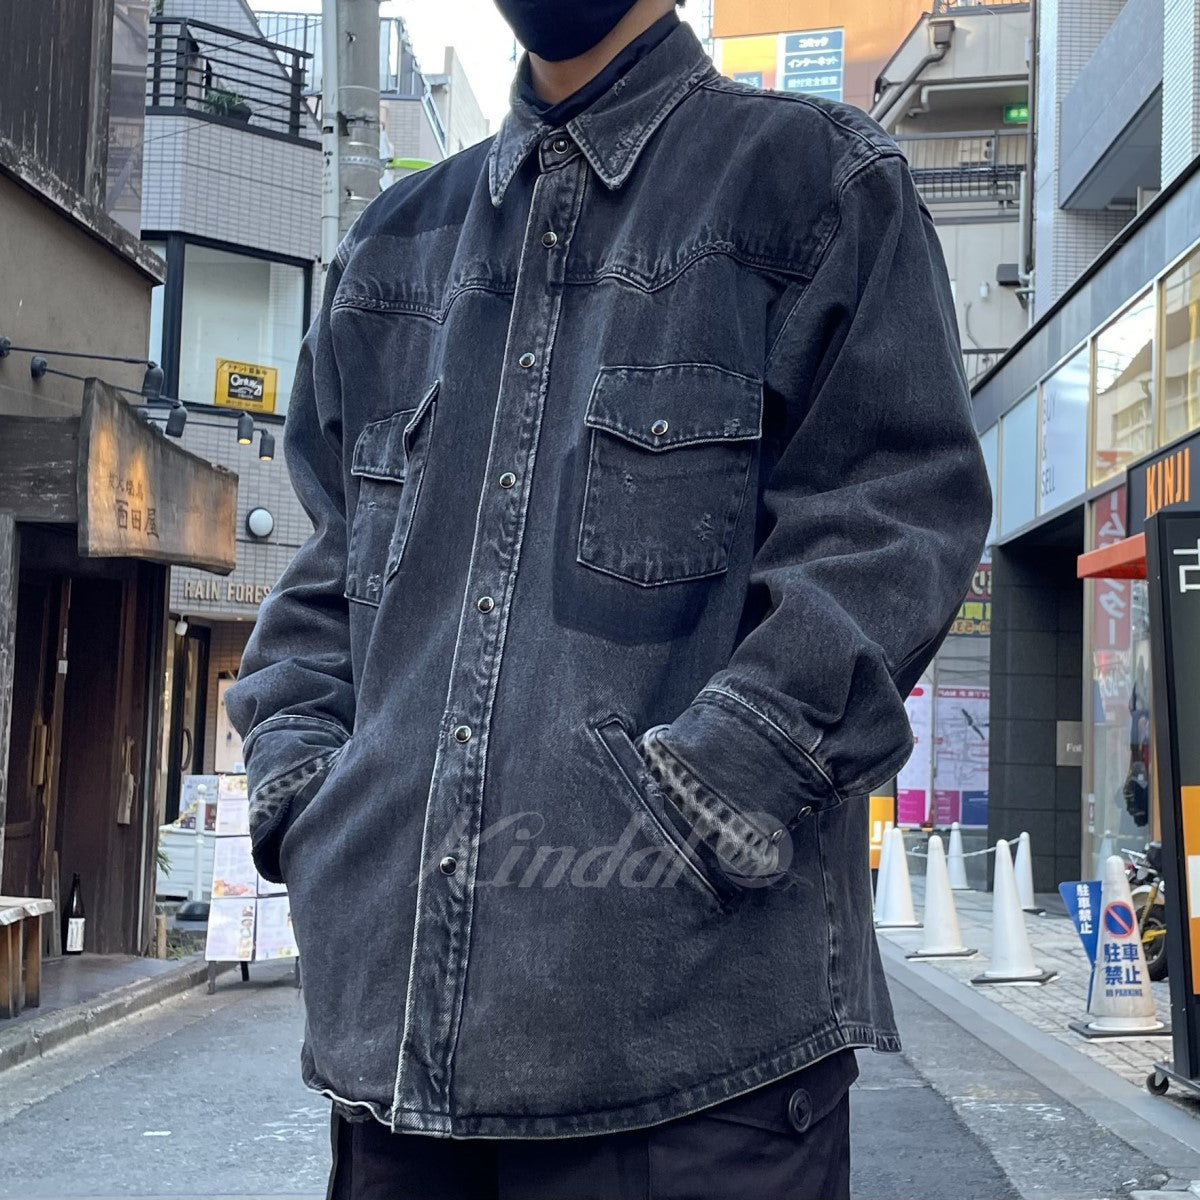 MIYAGIHIDETAKA(ミヤギヒデタカ) 20AW Black denim shirt Jacket再構築デニムシャツジャケット